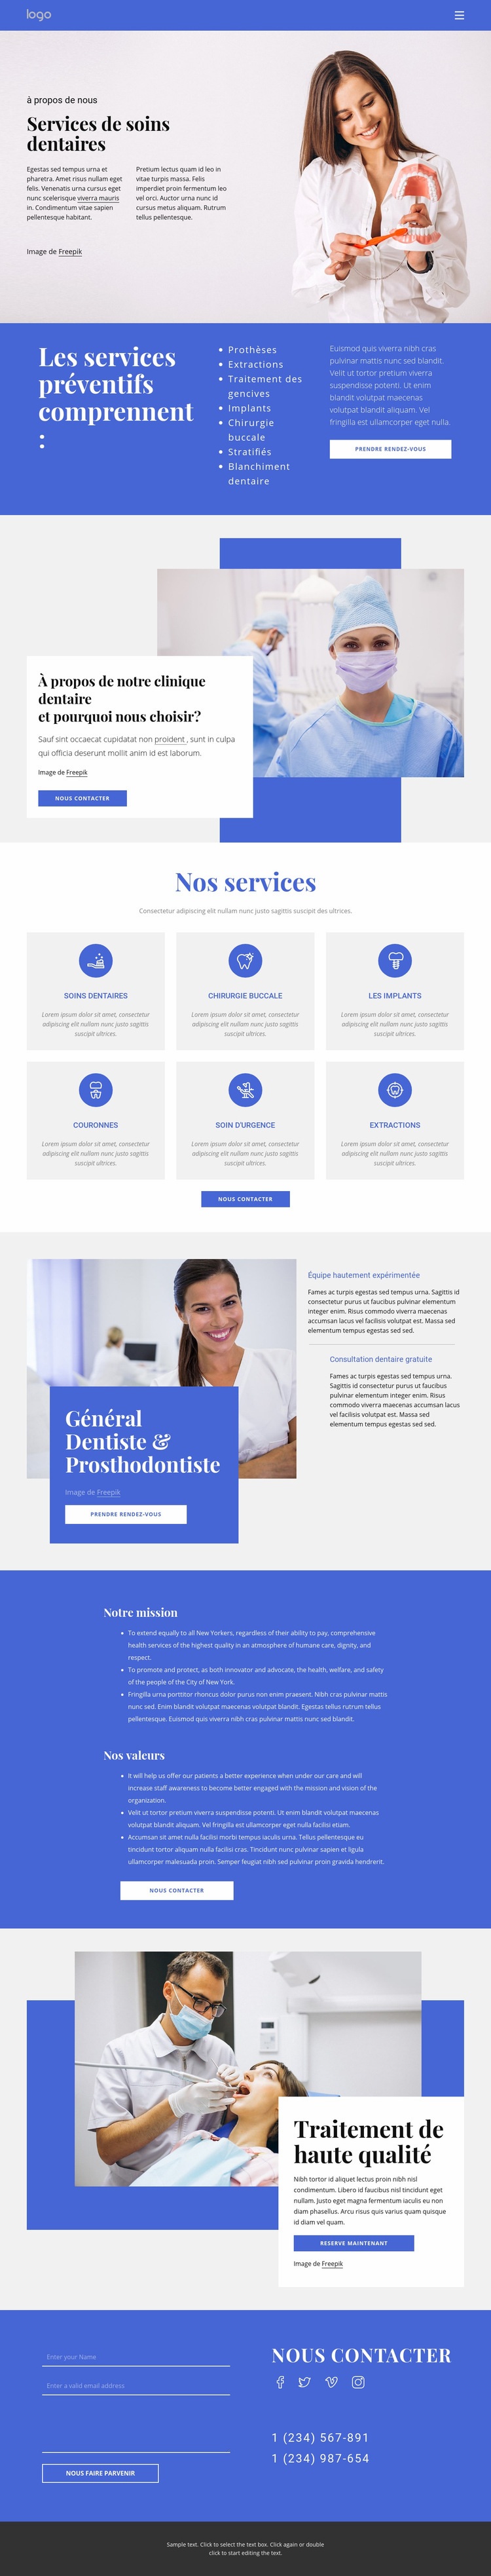 Dentiste et prosthodontie Maquette de site Web